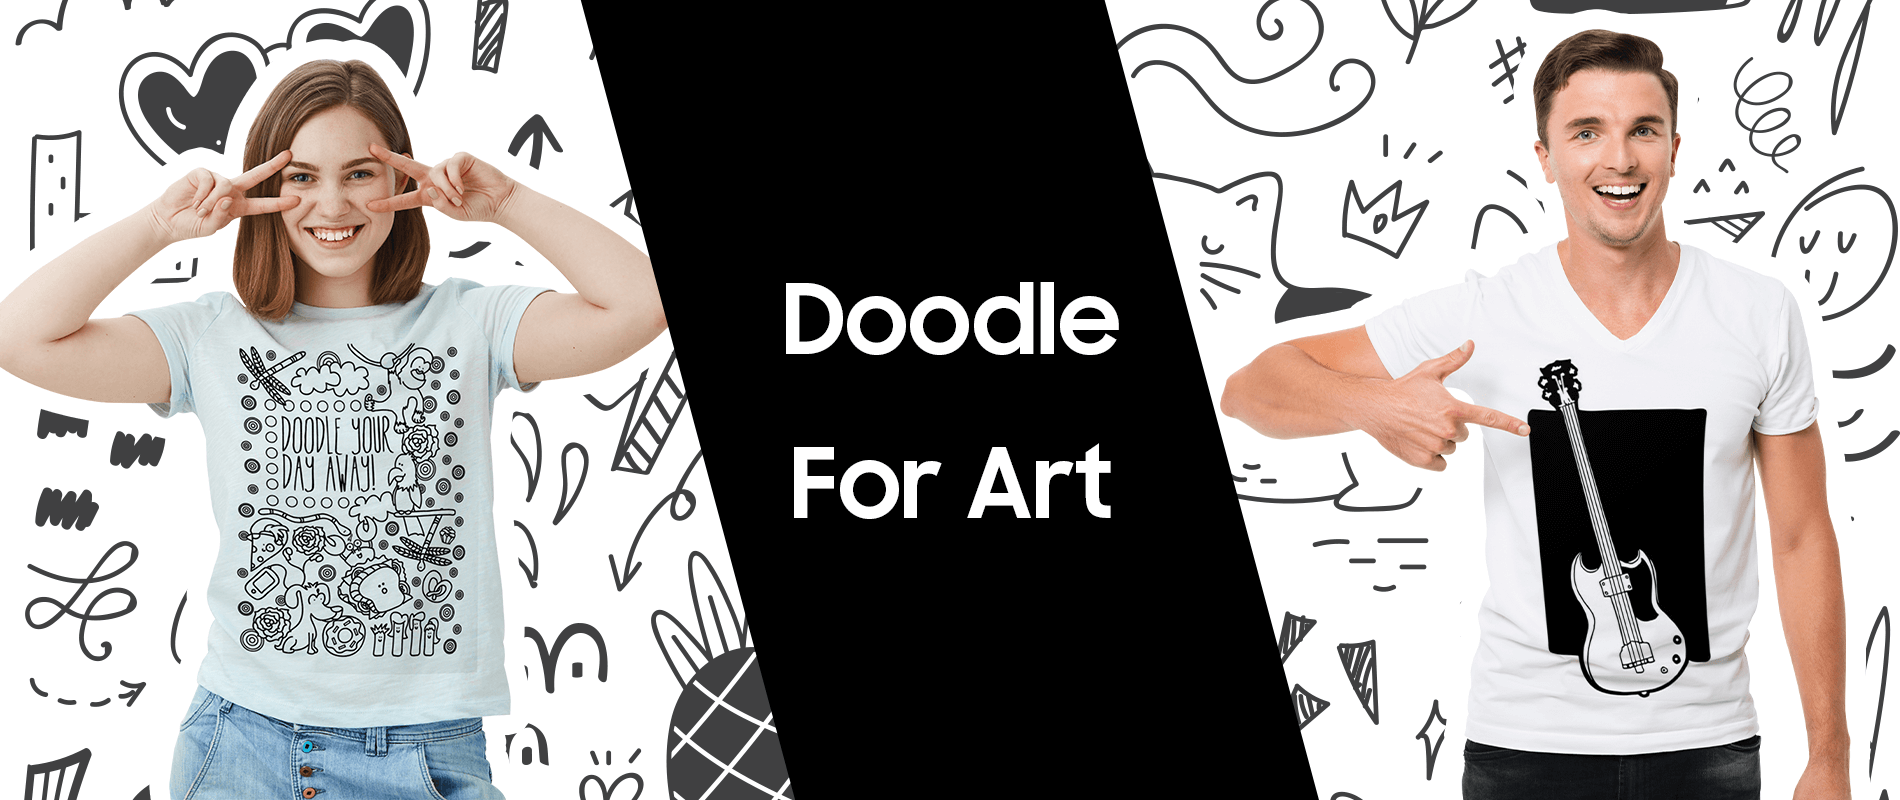 Doodle For Art Design Challenge